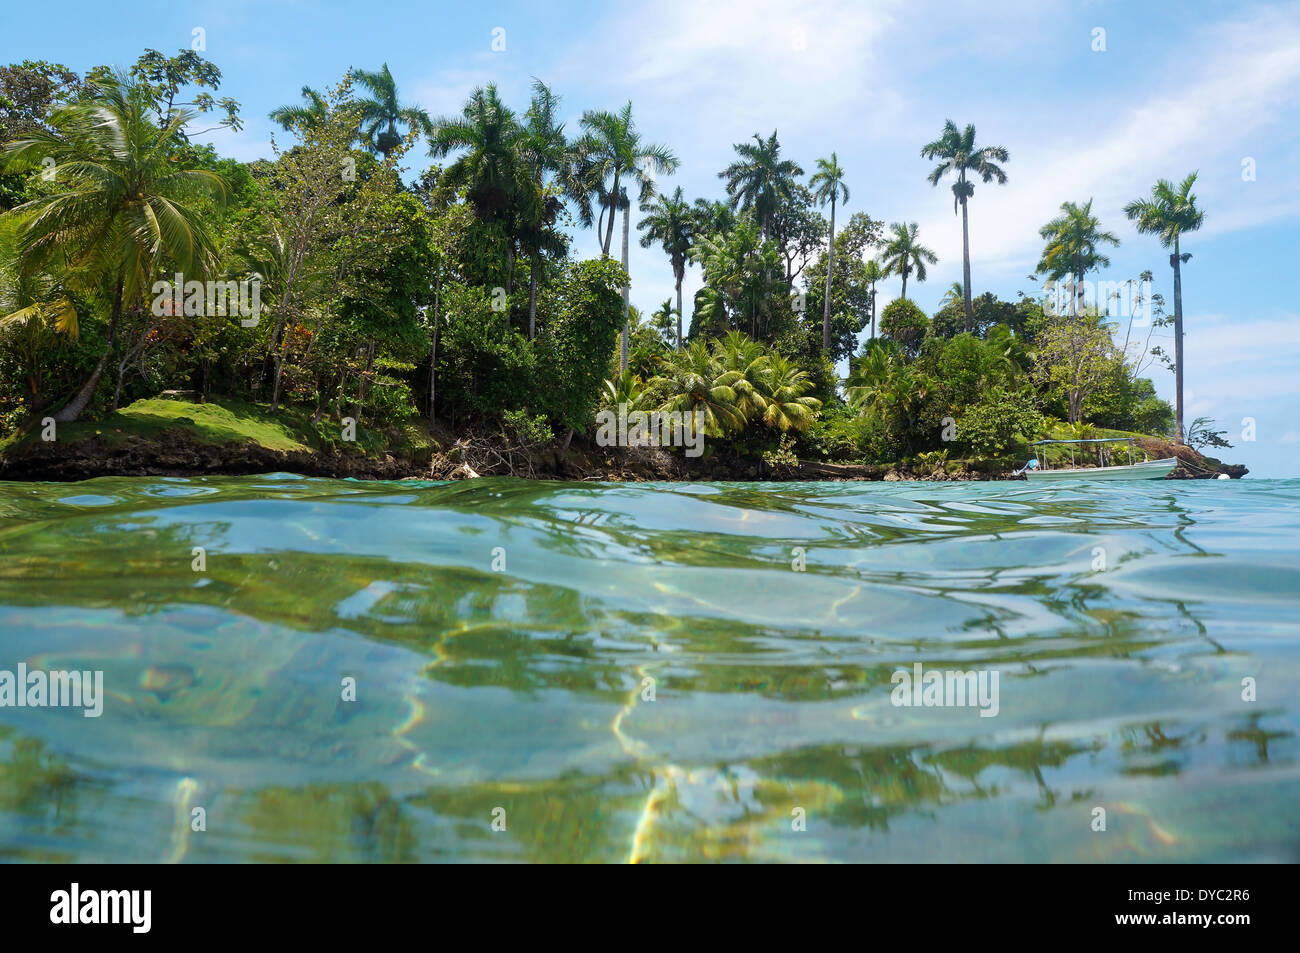 Tropischen Insel mit üppiger Vegetation und einem Boot am Liegeplatz Boje, gesehen von der Wasseroberfläche des karibischen Meeres, Panama Stockfoto